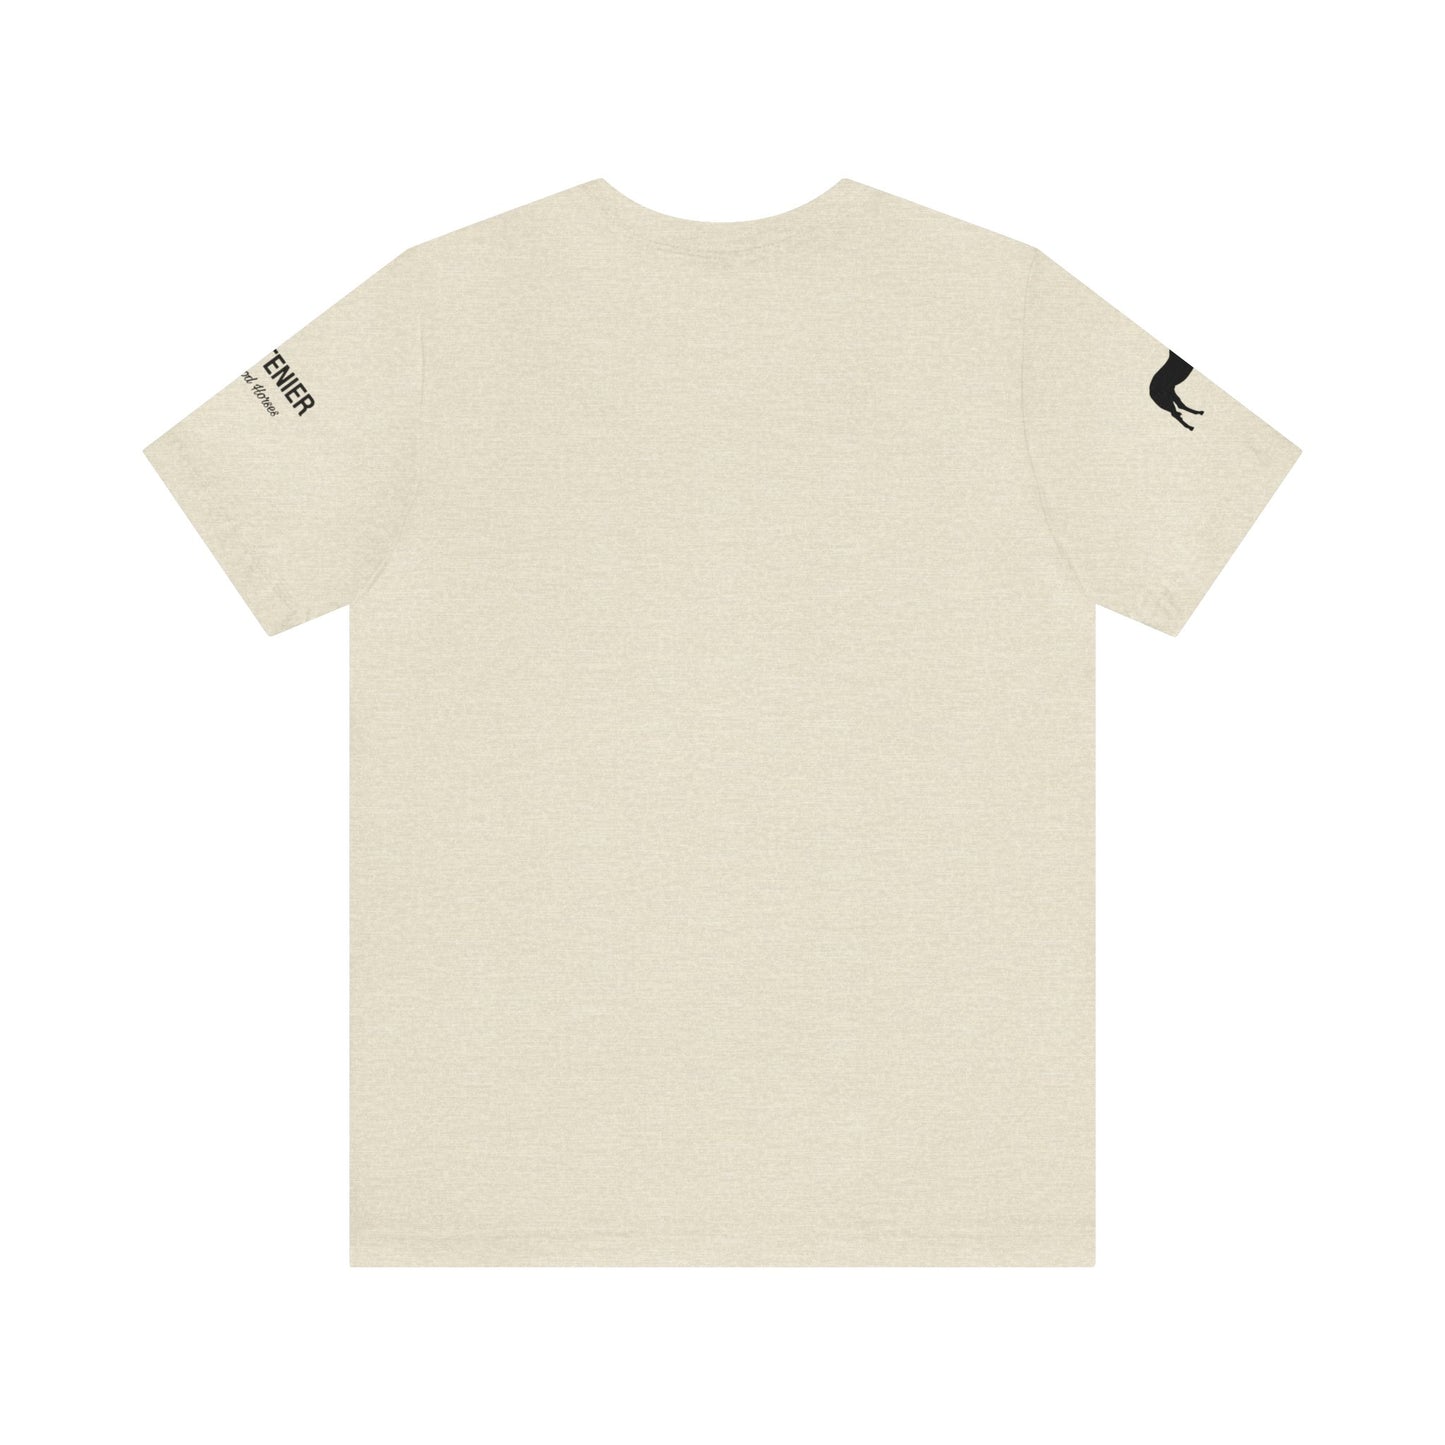 Y270 Unisex T-Shirt- Short Sleeve-Crew Neck-Holsteiners